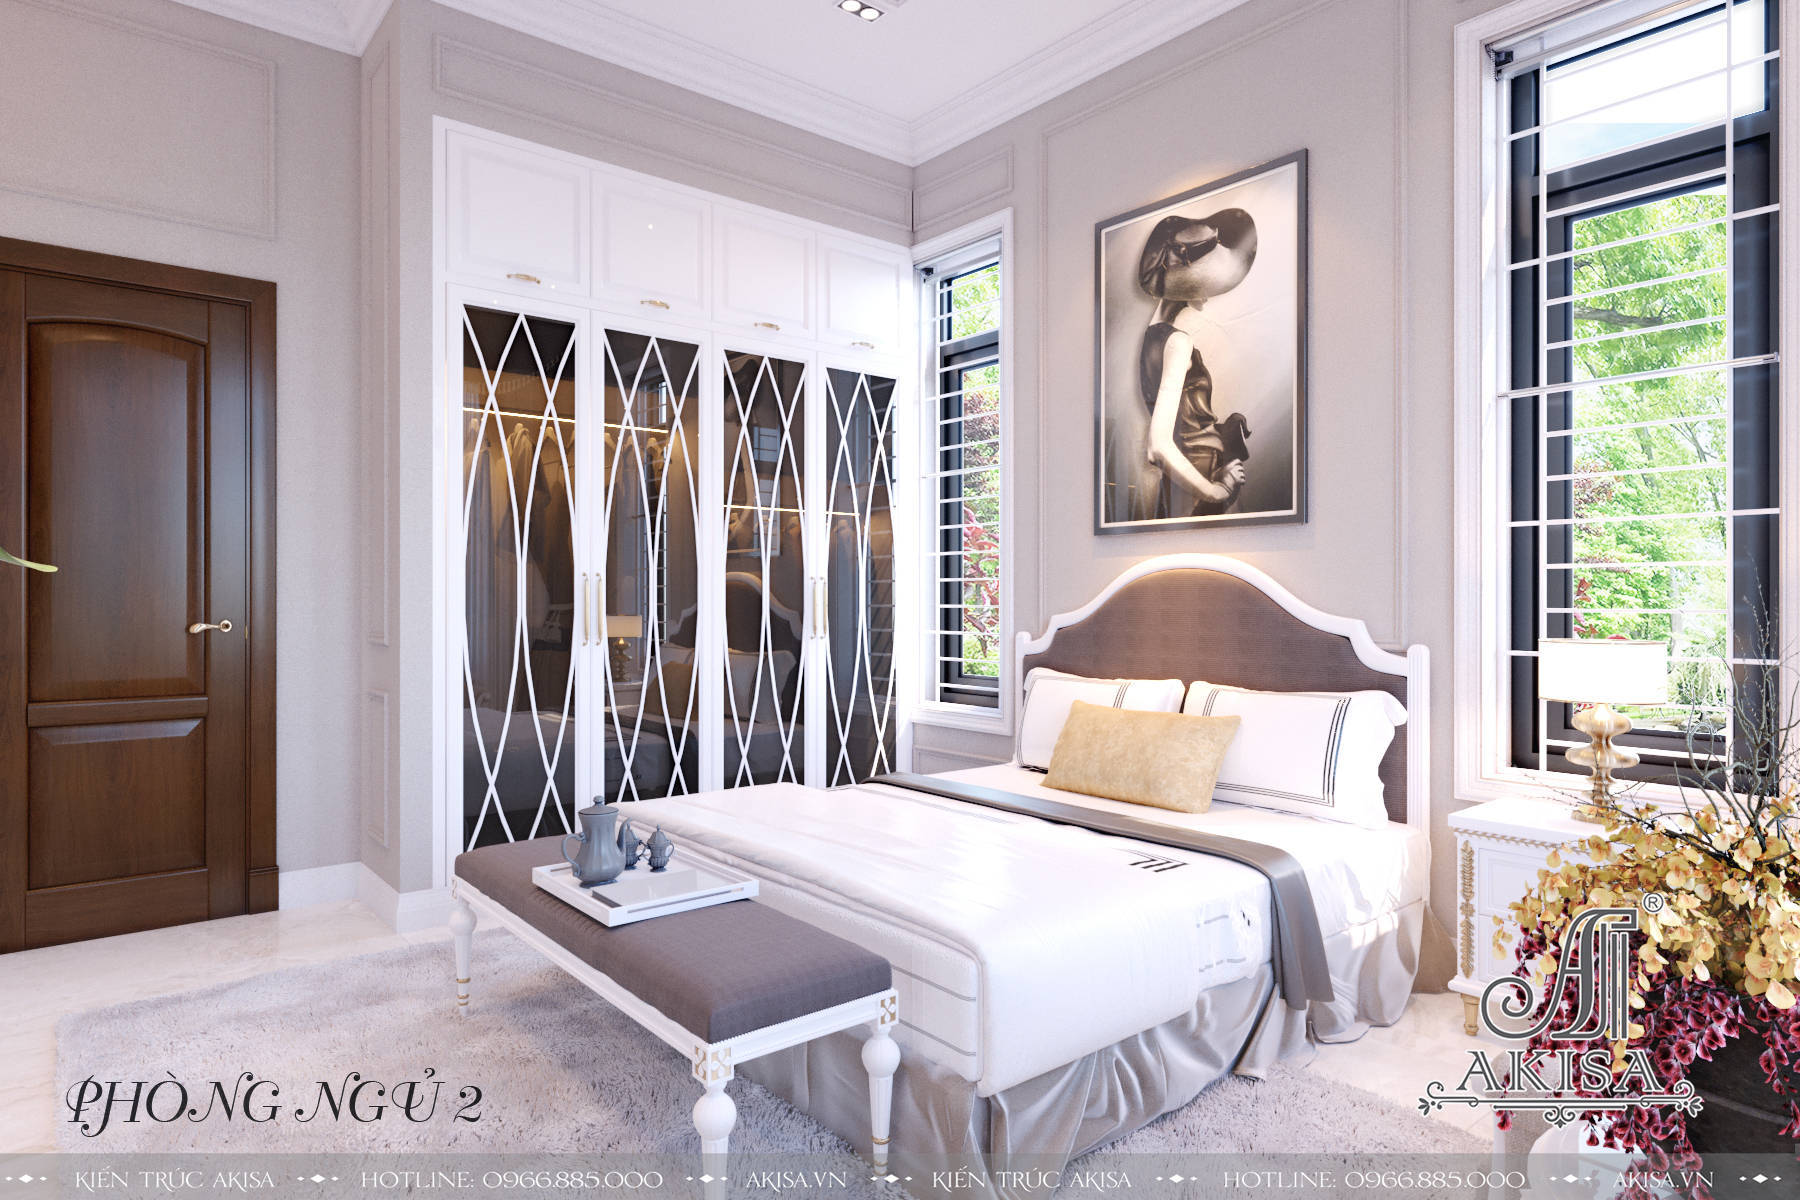 Phòng ngủ được bố trí tại vị trí yên tĩnh, có tầm nhìn đẹp, chan hòa ánh sáng thiên nhiên mang tới giấc ngủ ngon cùng nguồn năng lượng tích cực.